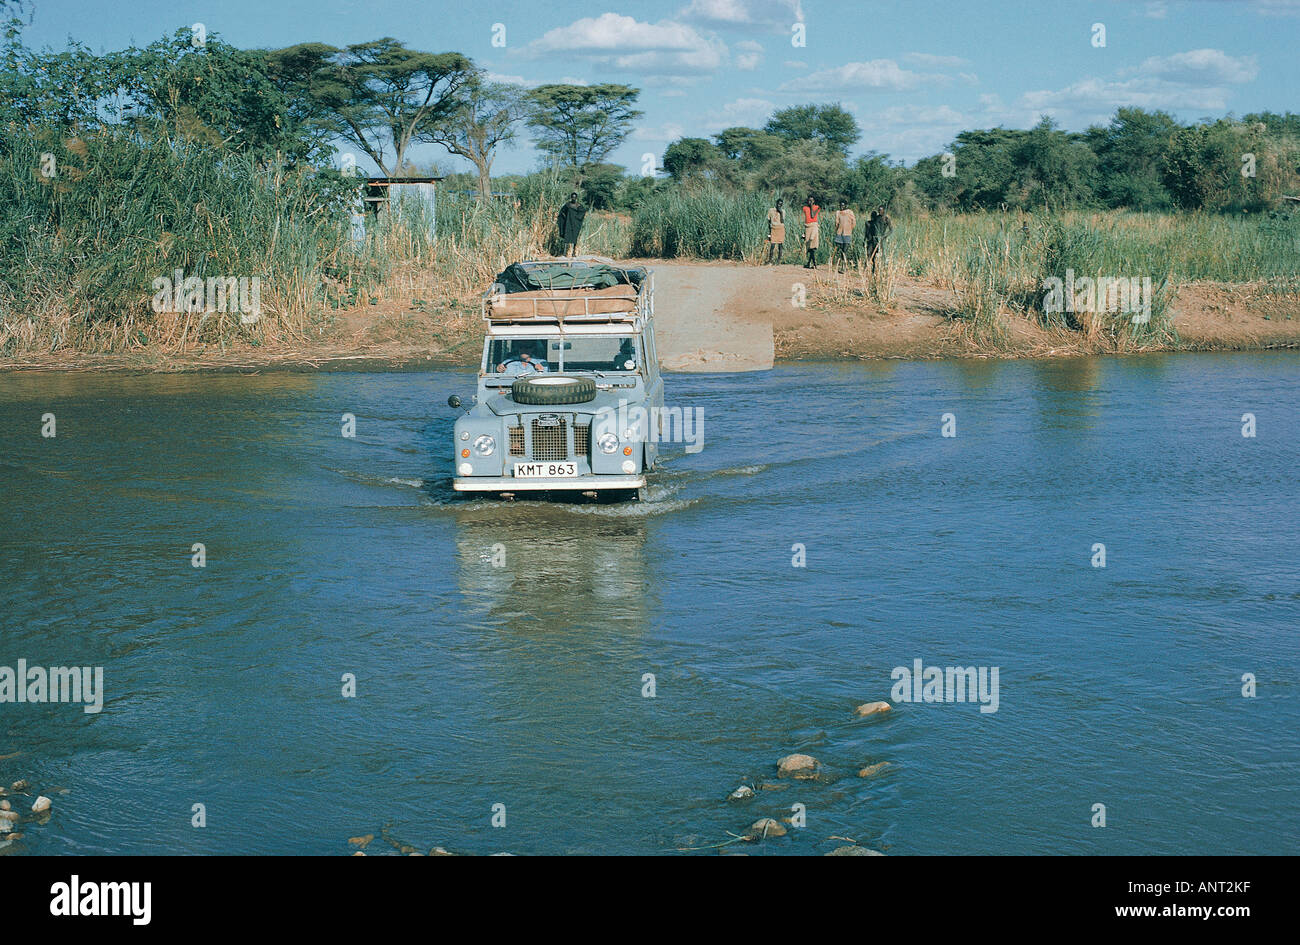 Landrover fording Weiwei River im Norden Kenias das Fahrzeug hat einen Dachträger, schwer beladen mit camping-Ausrüstung Stockfoto